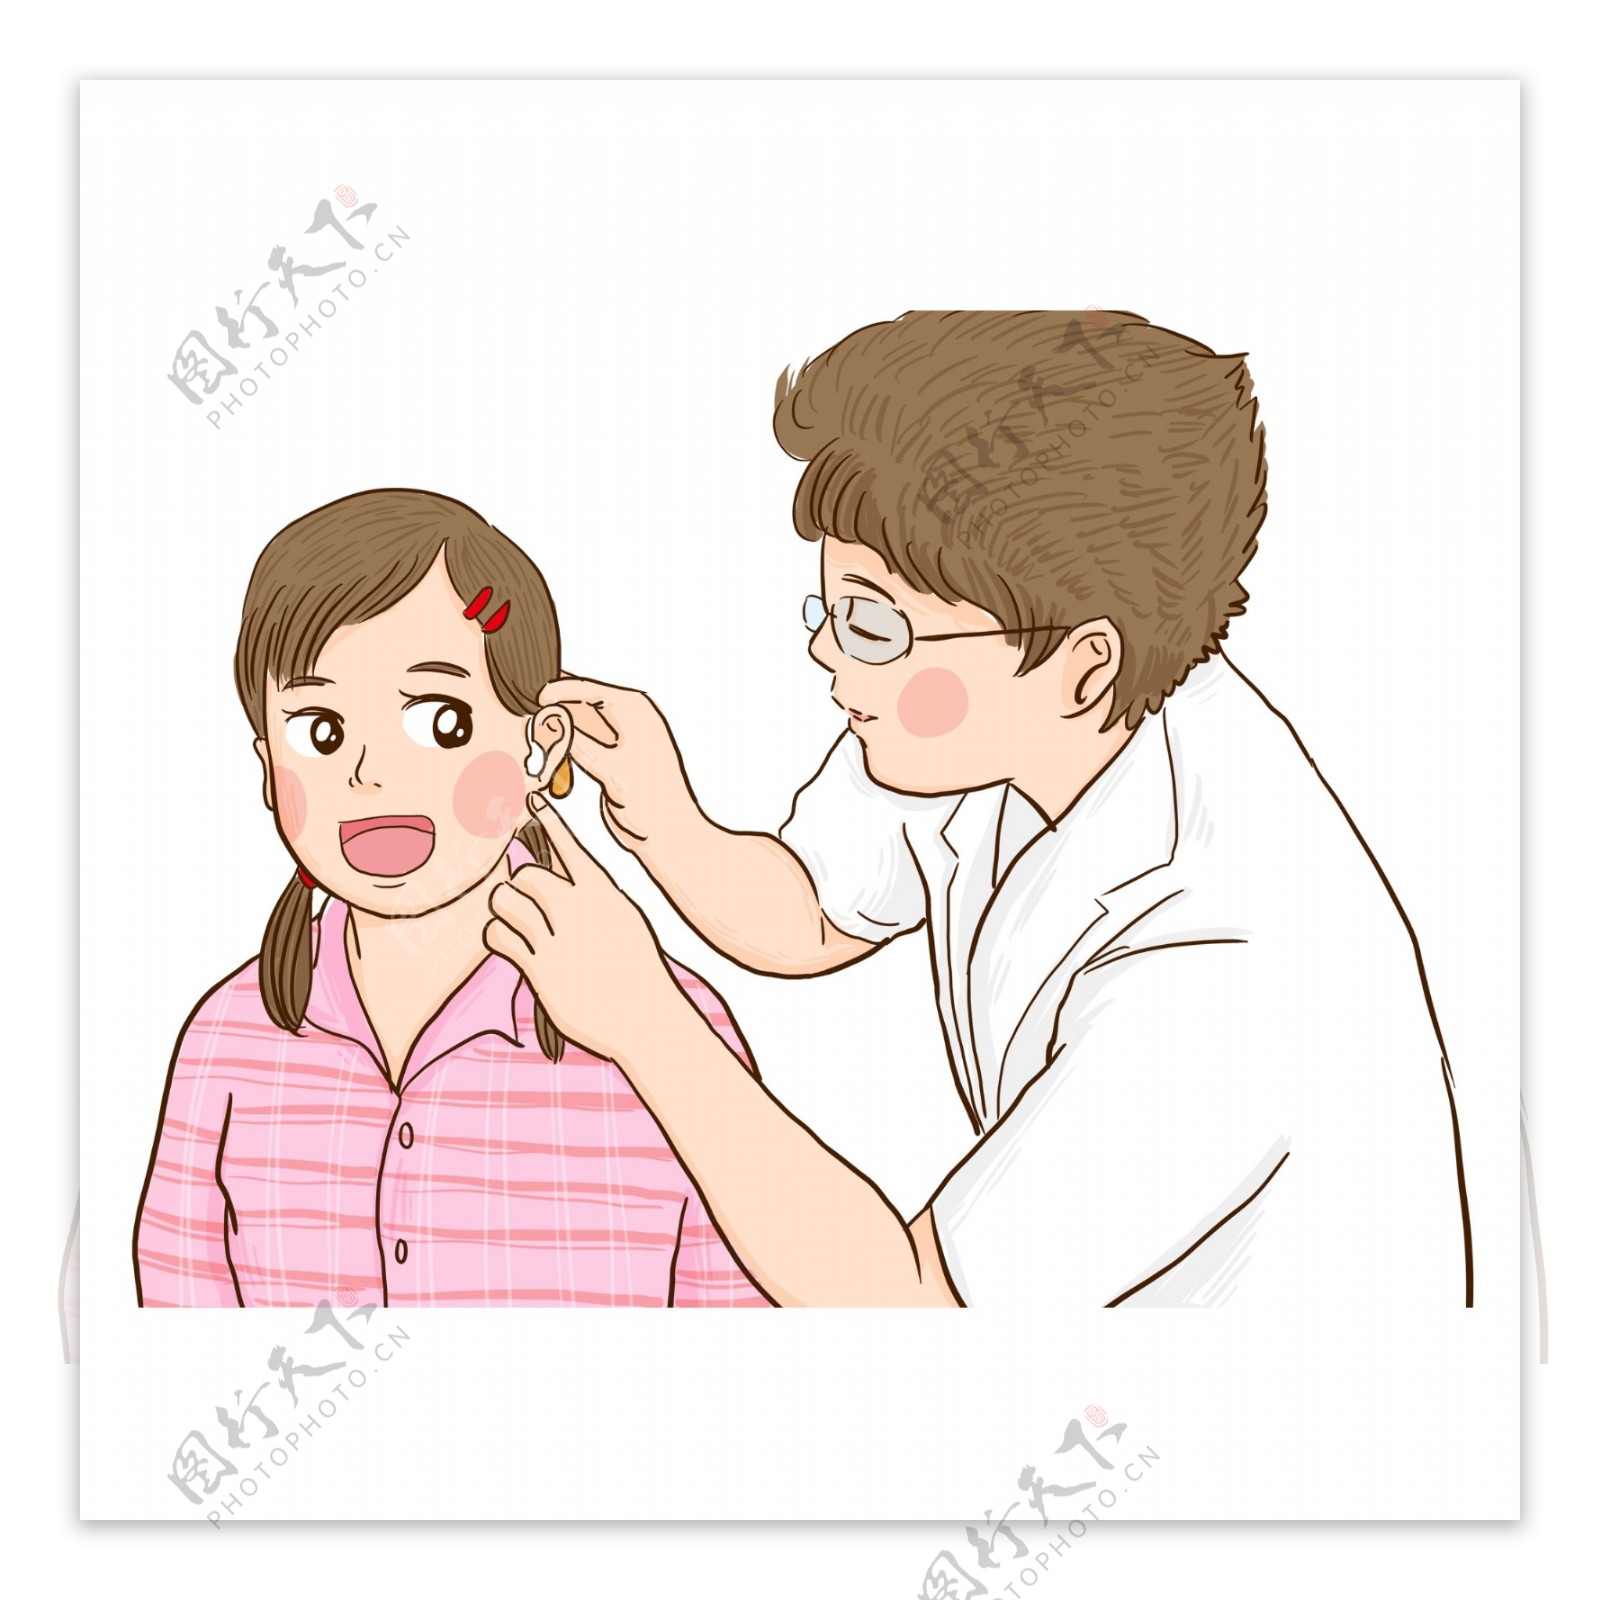 给病人戴助听器的医生漫画人物设计可商用元素